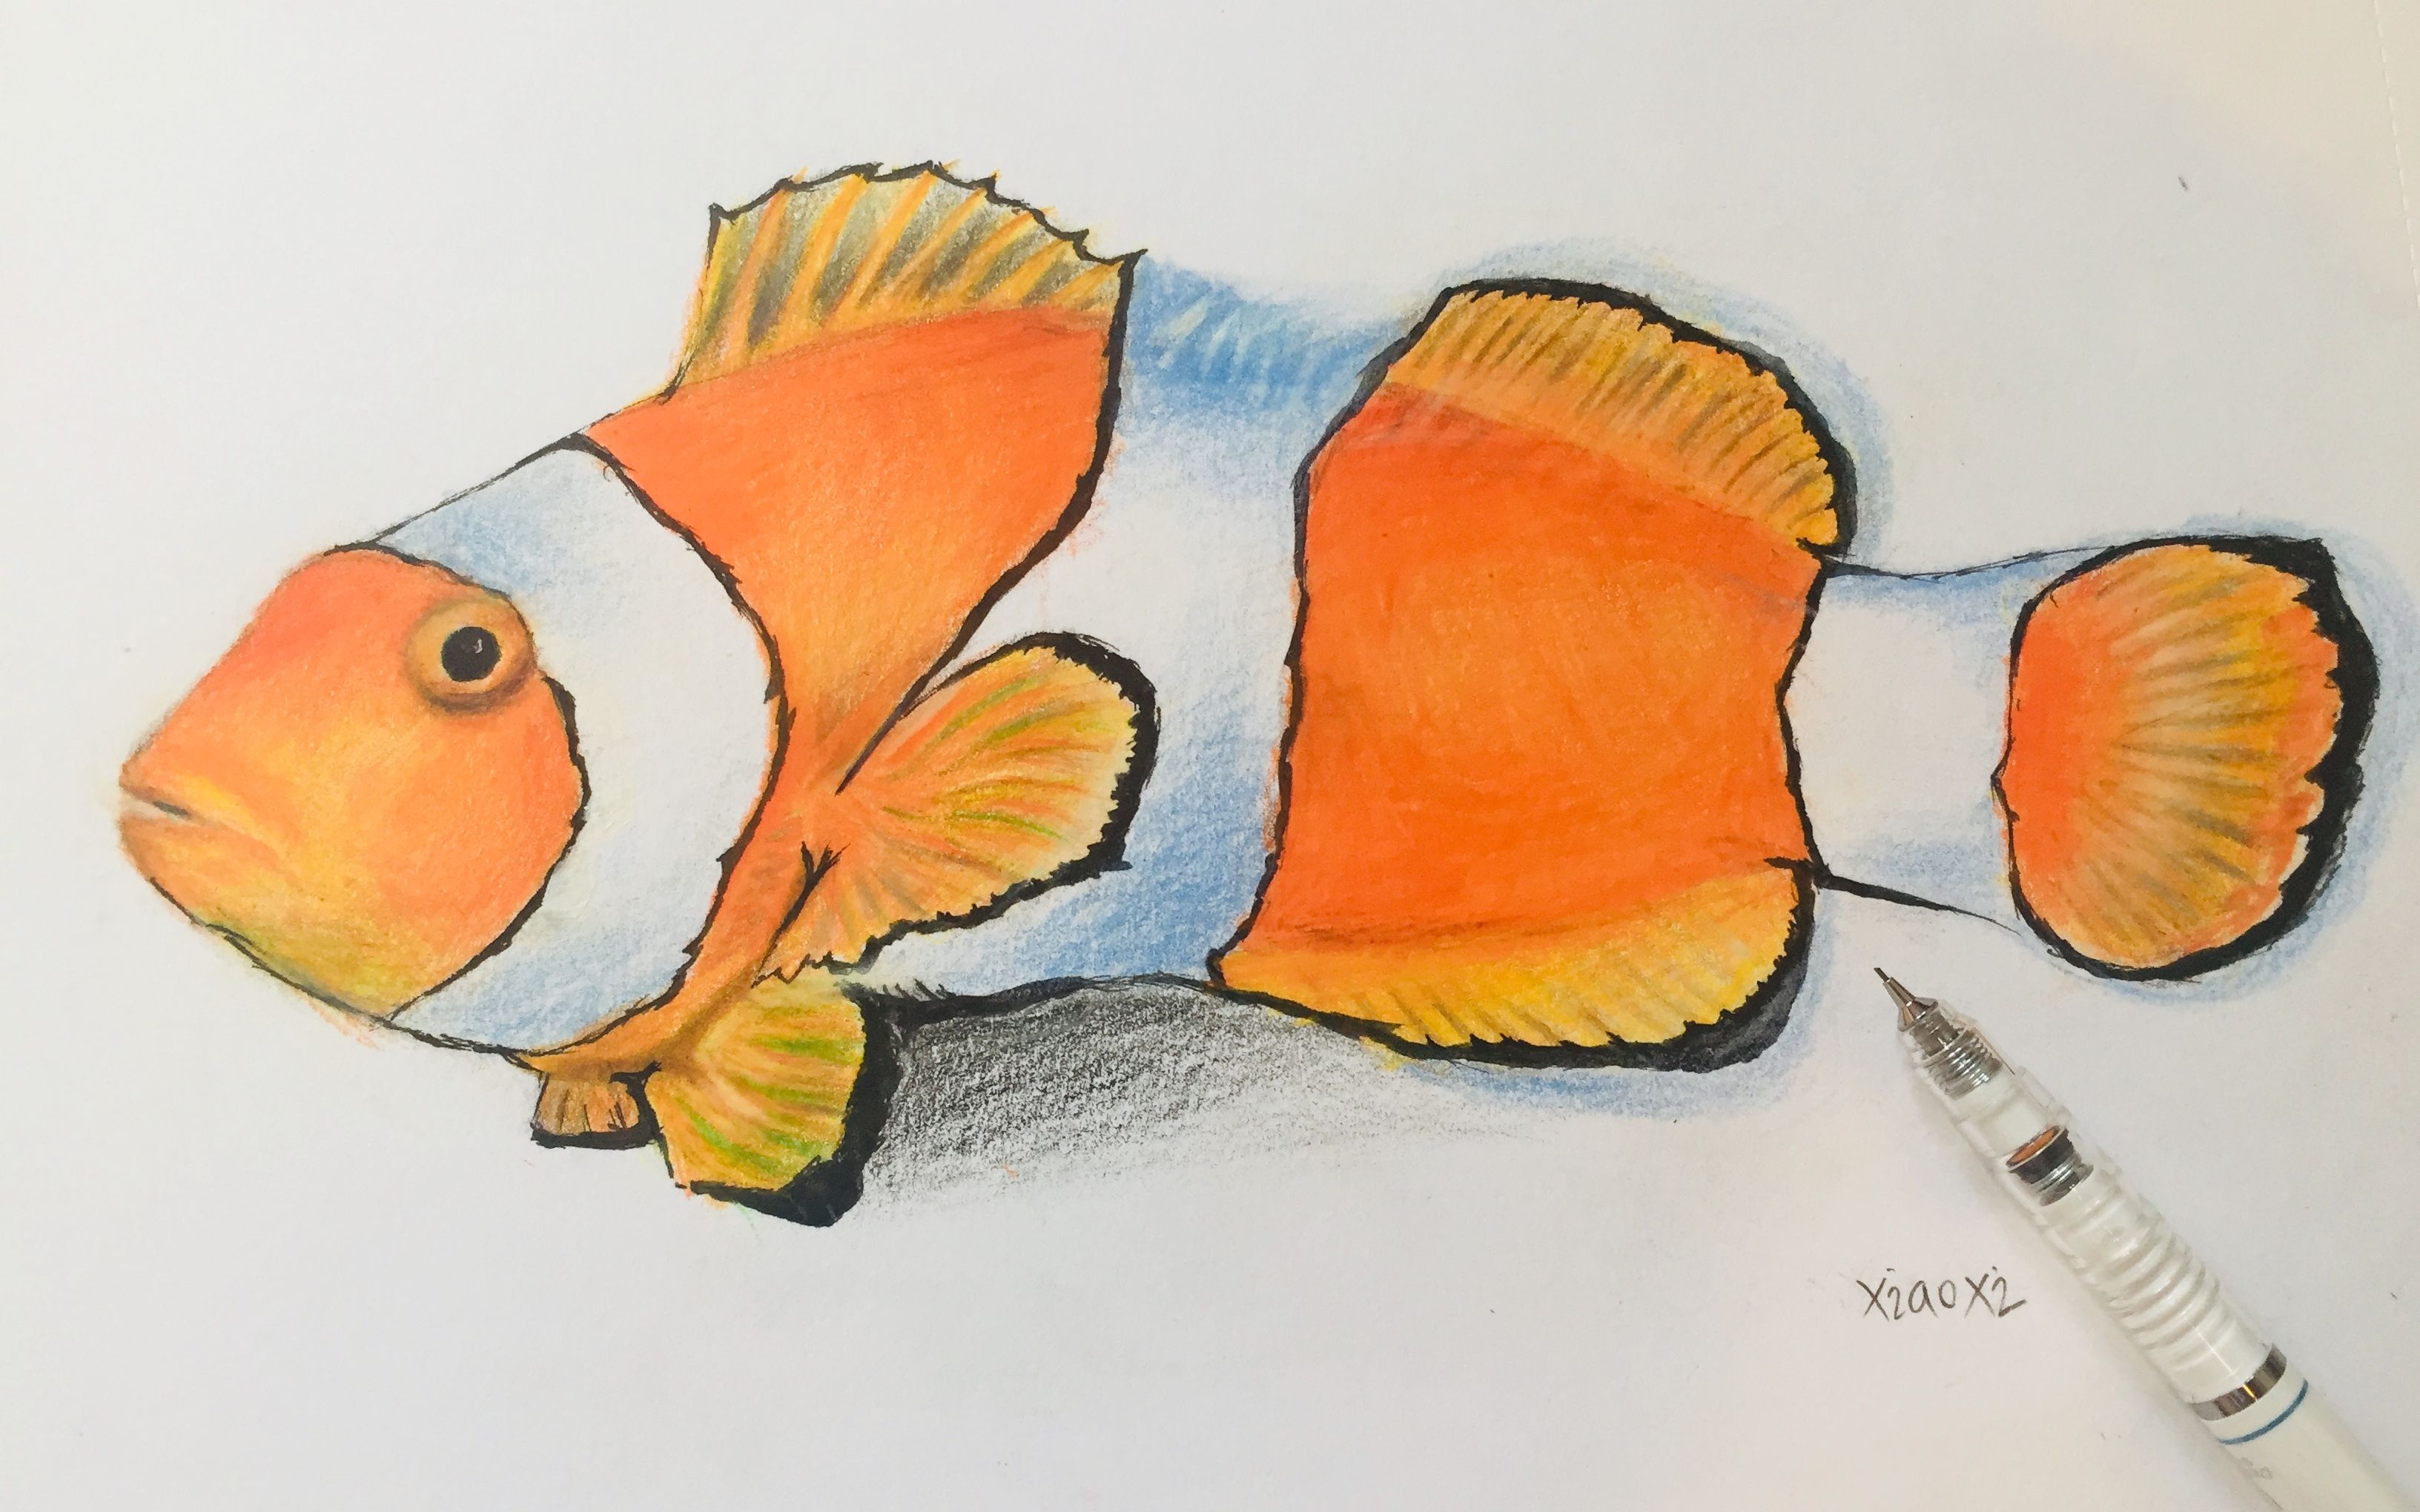 小晰xiaoxi/小晰绘画 可爱的小丑鱼彩色铅笔写实绘画第一期